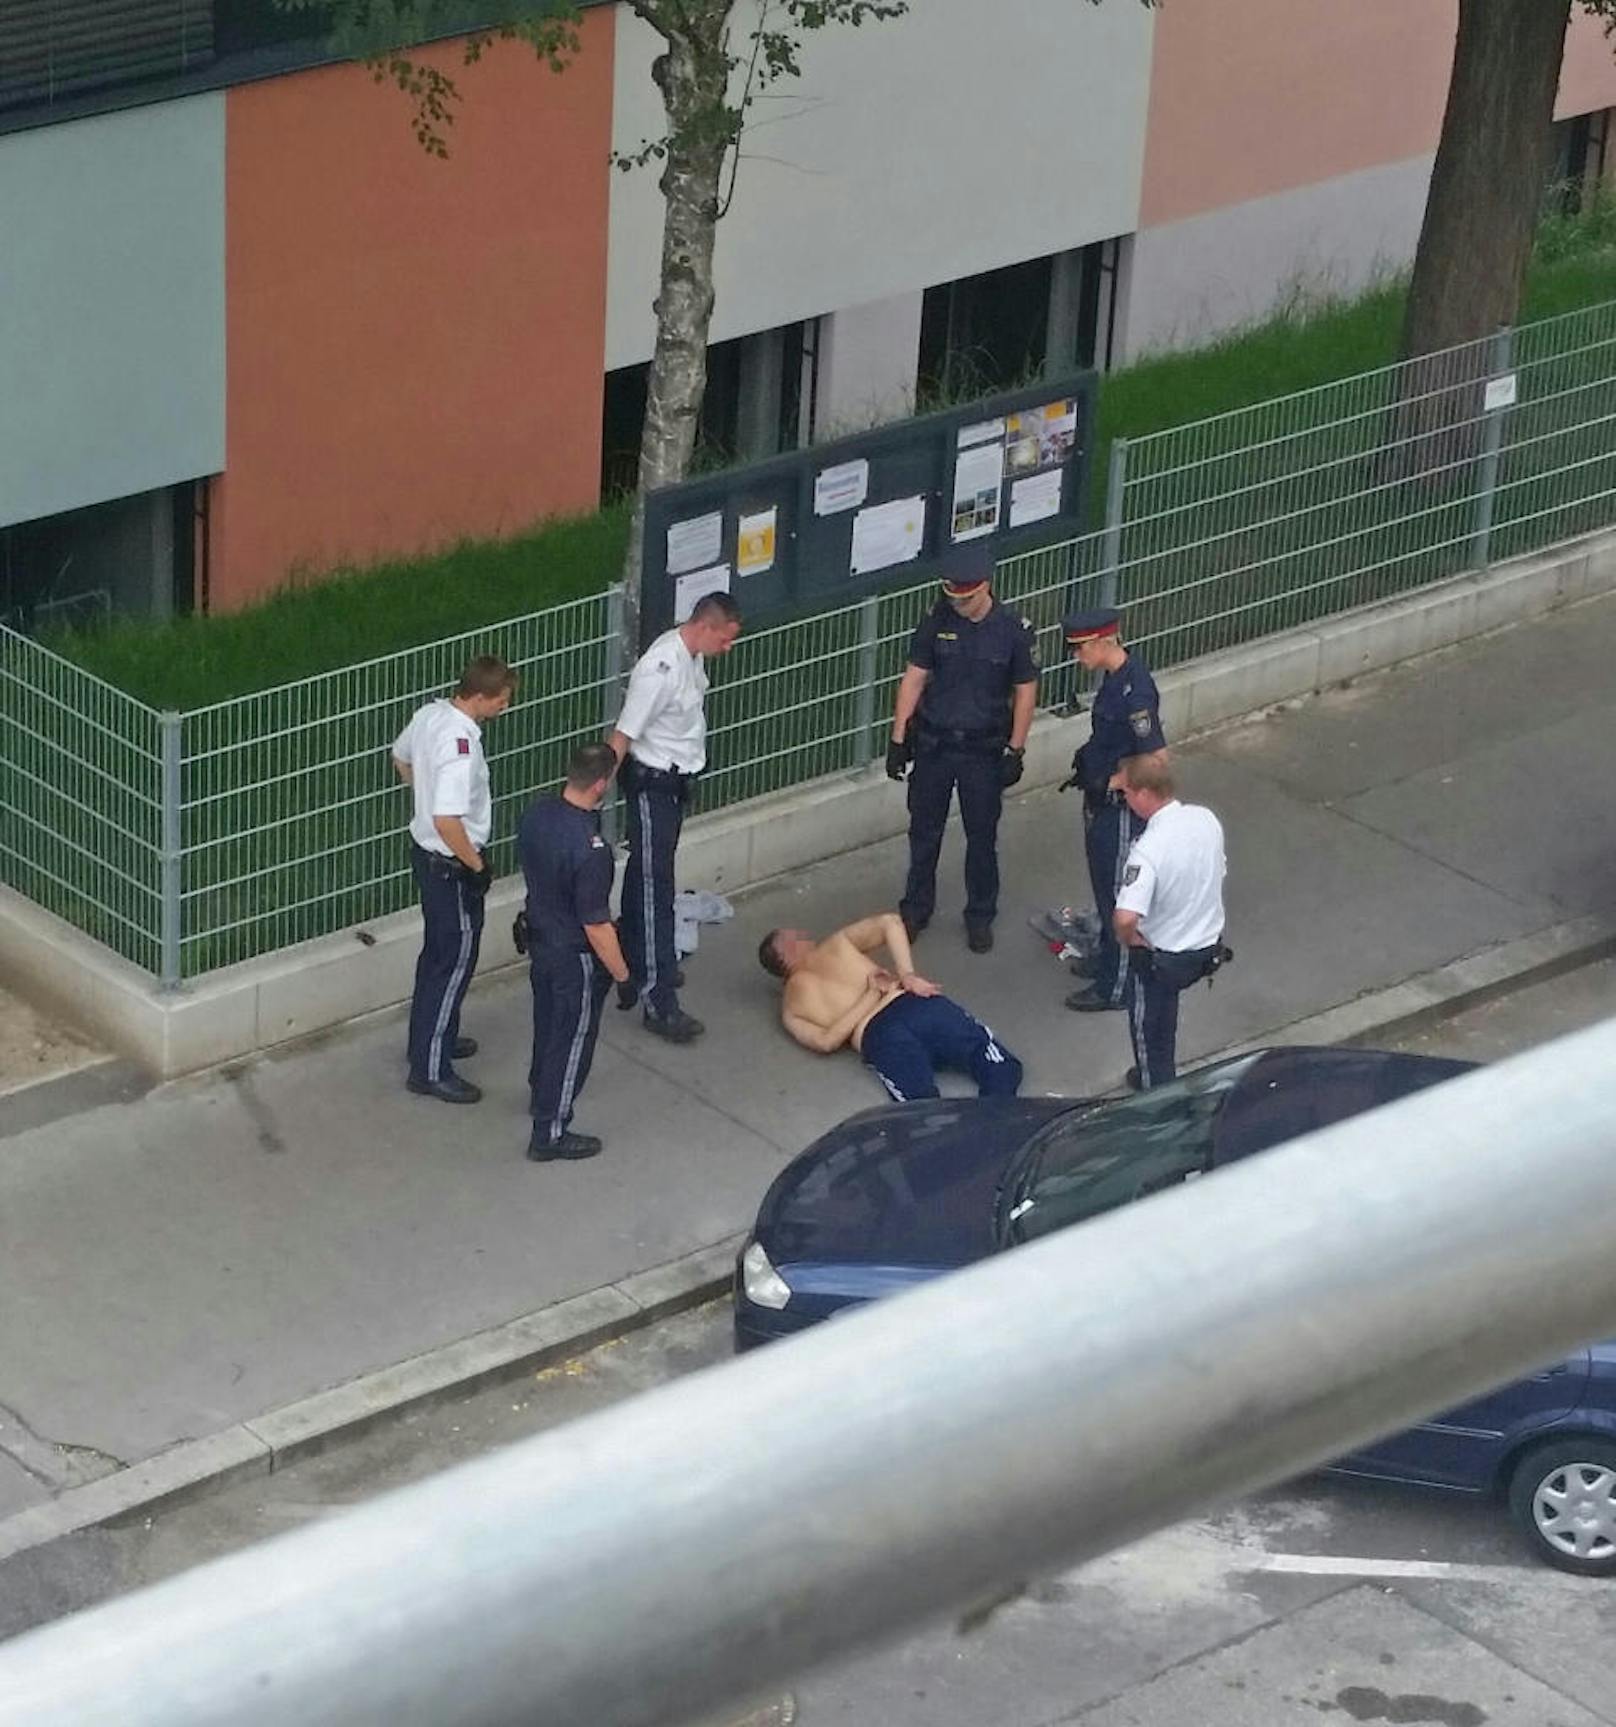 Ein 31-Jähriger drohte in einem Wiener Supermarkt mit einem Messer - Polizisten konnten ihn kurz darauf festnehmen.